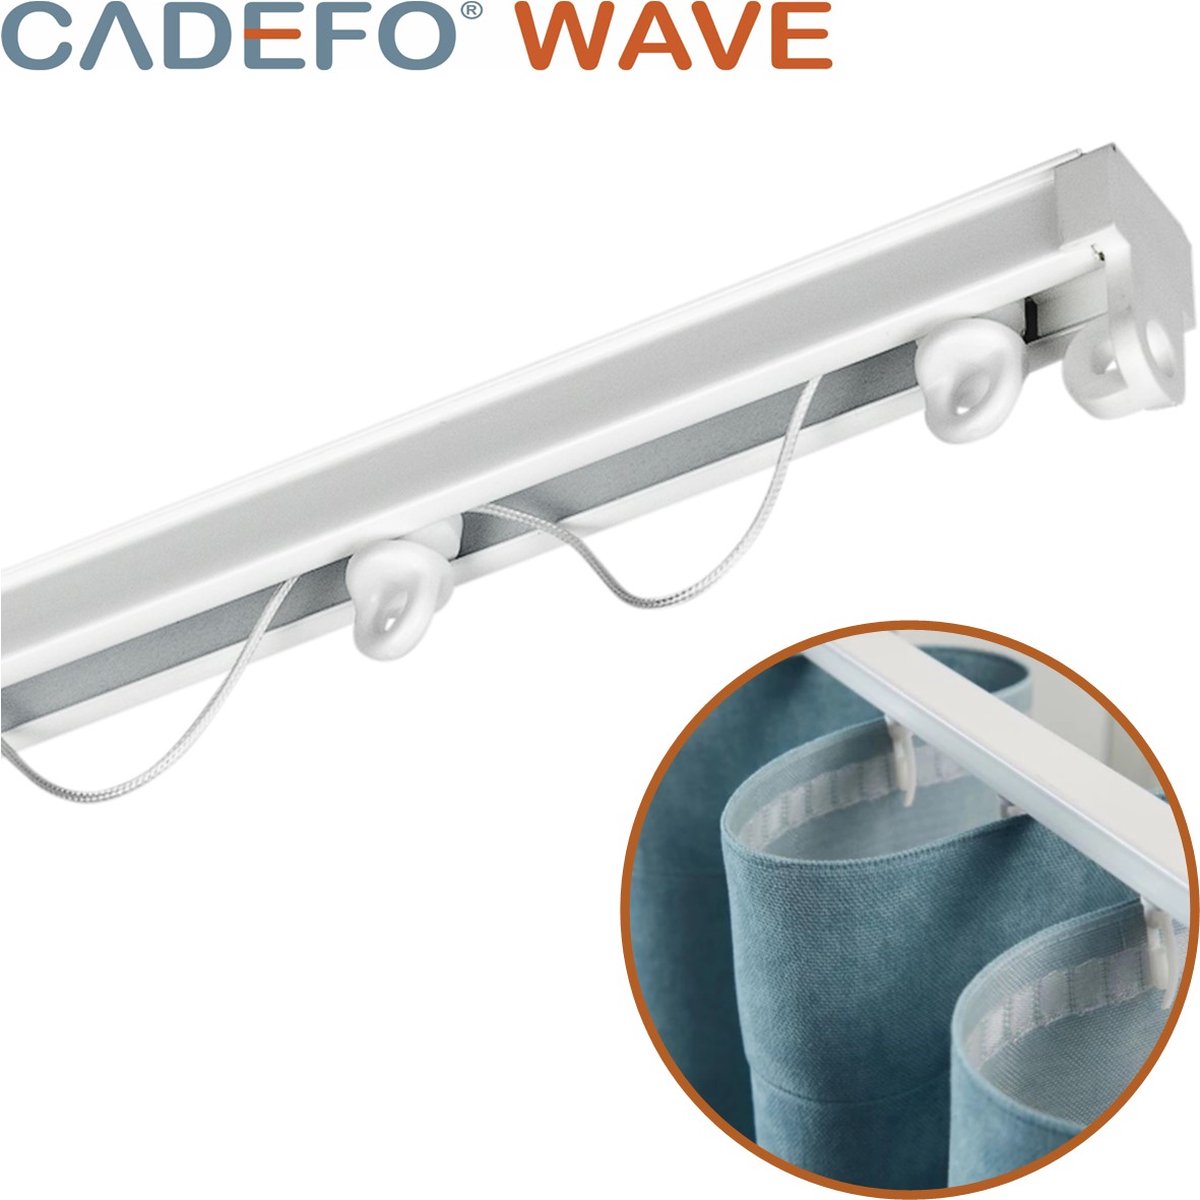 CADEFO WAVE (351 - 400 cm) Gordijnrails - Compleet op maat! - UIT 1 STUK - Leverbaar tot 6 meter - Plafondbevestiging - Lengte 380 cm